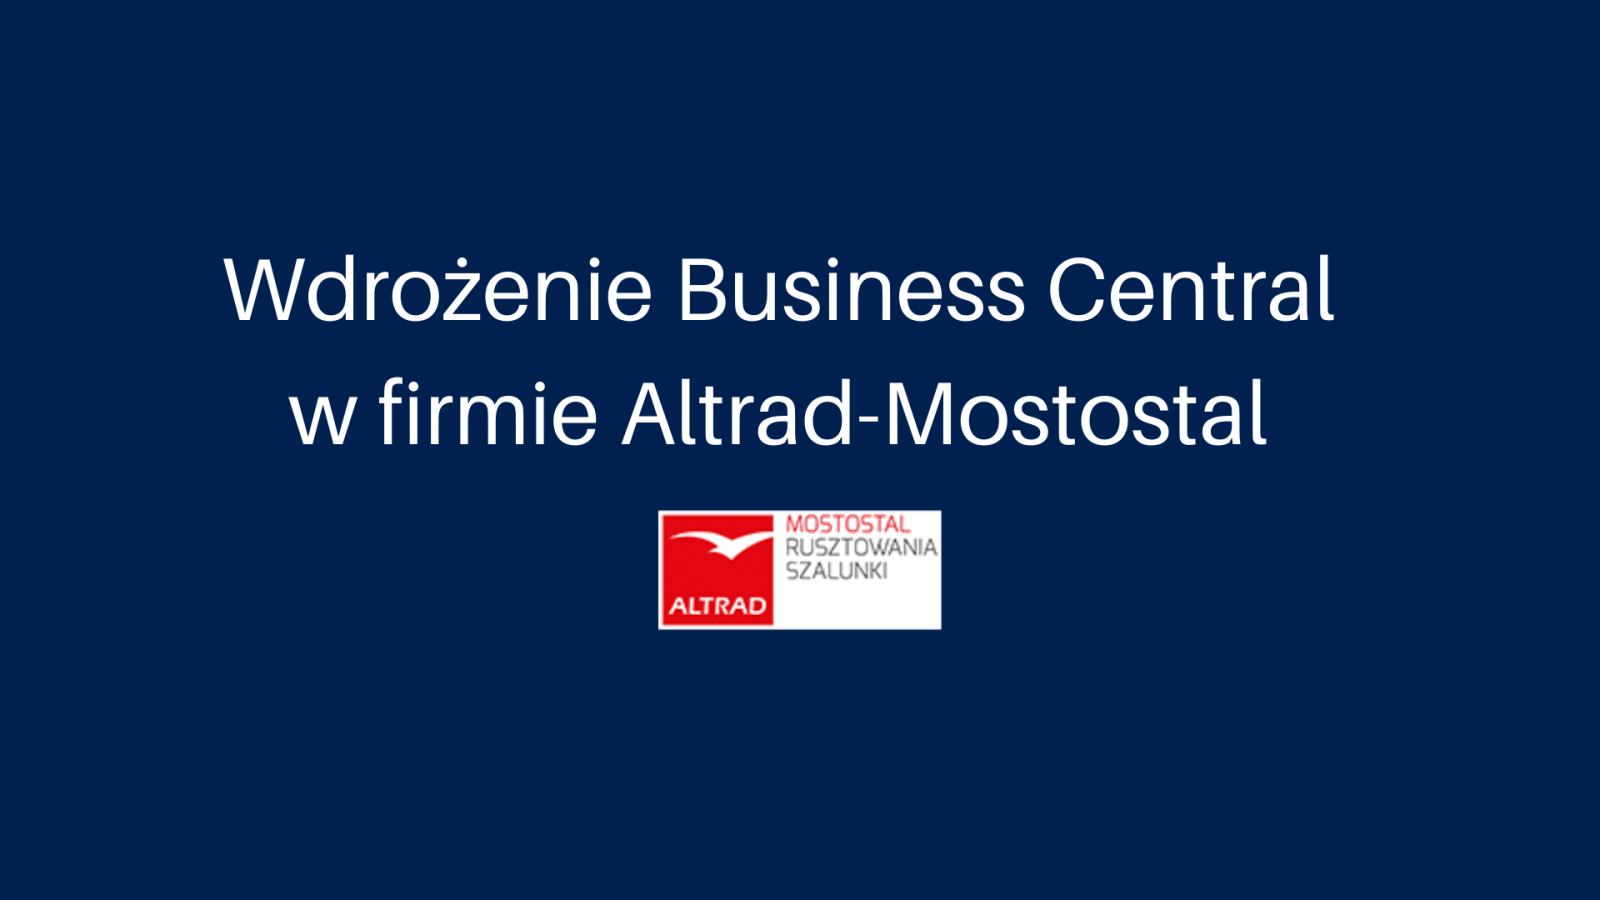 Wdrożenie Business Central w firmie Altrad-Mostostal